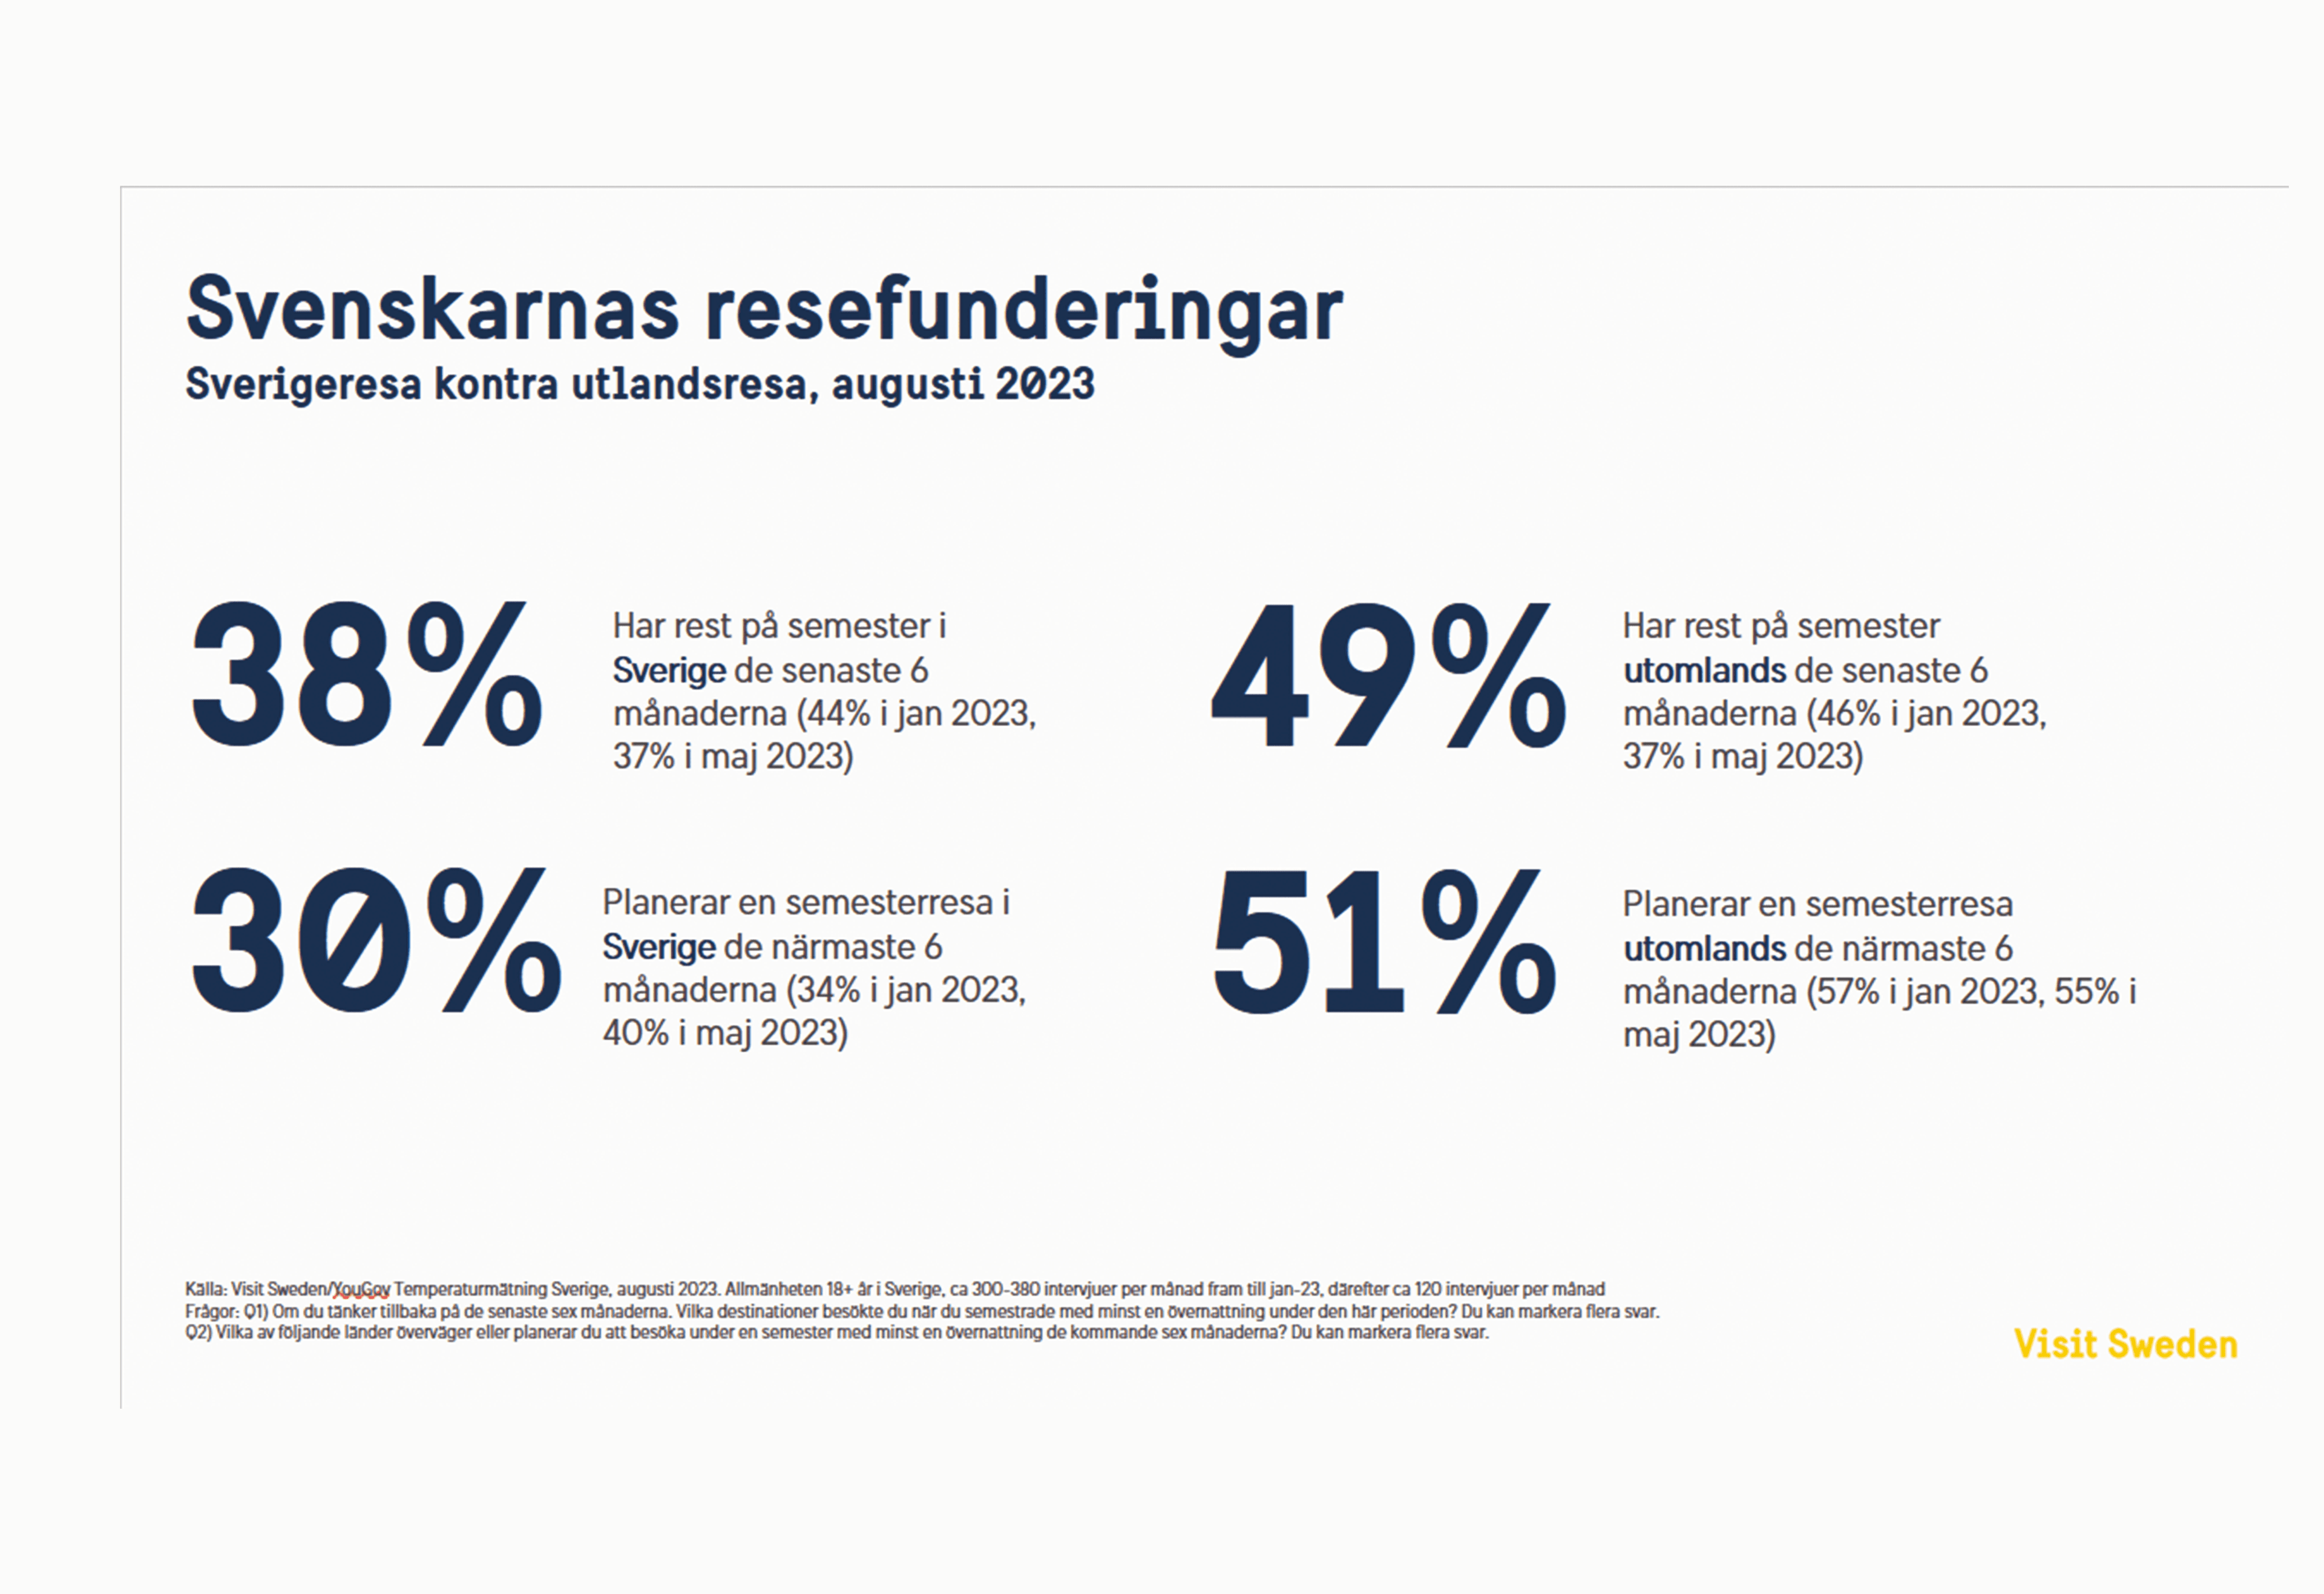 En illustration som visar att 38% av svenskarna har rest på semester i Sverige de senaste 6 månaderna och 30% planerar en resa i Sverige de närmaste 6 månaderna. 49% av svenskarna har rest på semester utomlands de senaste 6 månaderna och 51% planerar att resa utomlands de närmaste 6 månaderna.